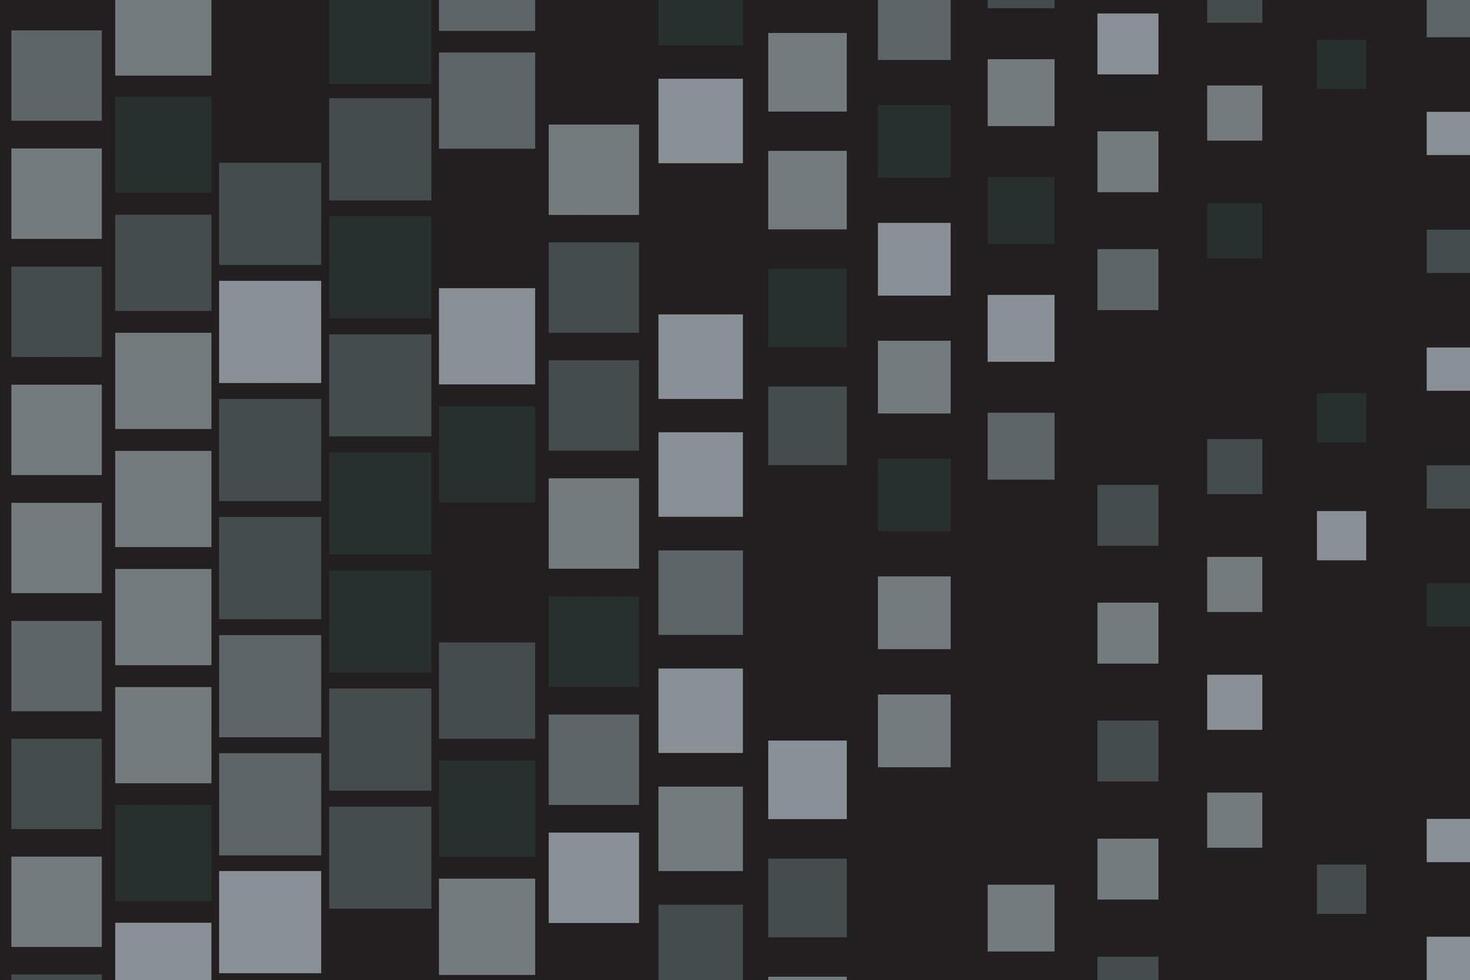 nero mezzitoni punto grano struttura pixel pop Art astratto modello sfondo vettore